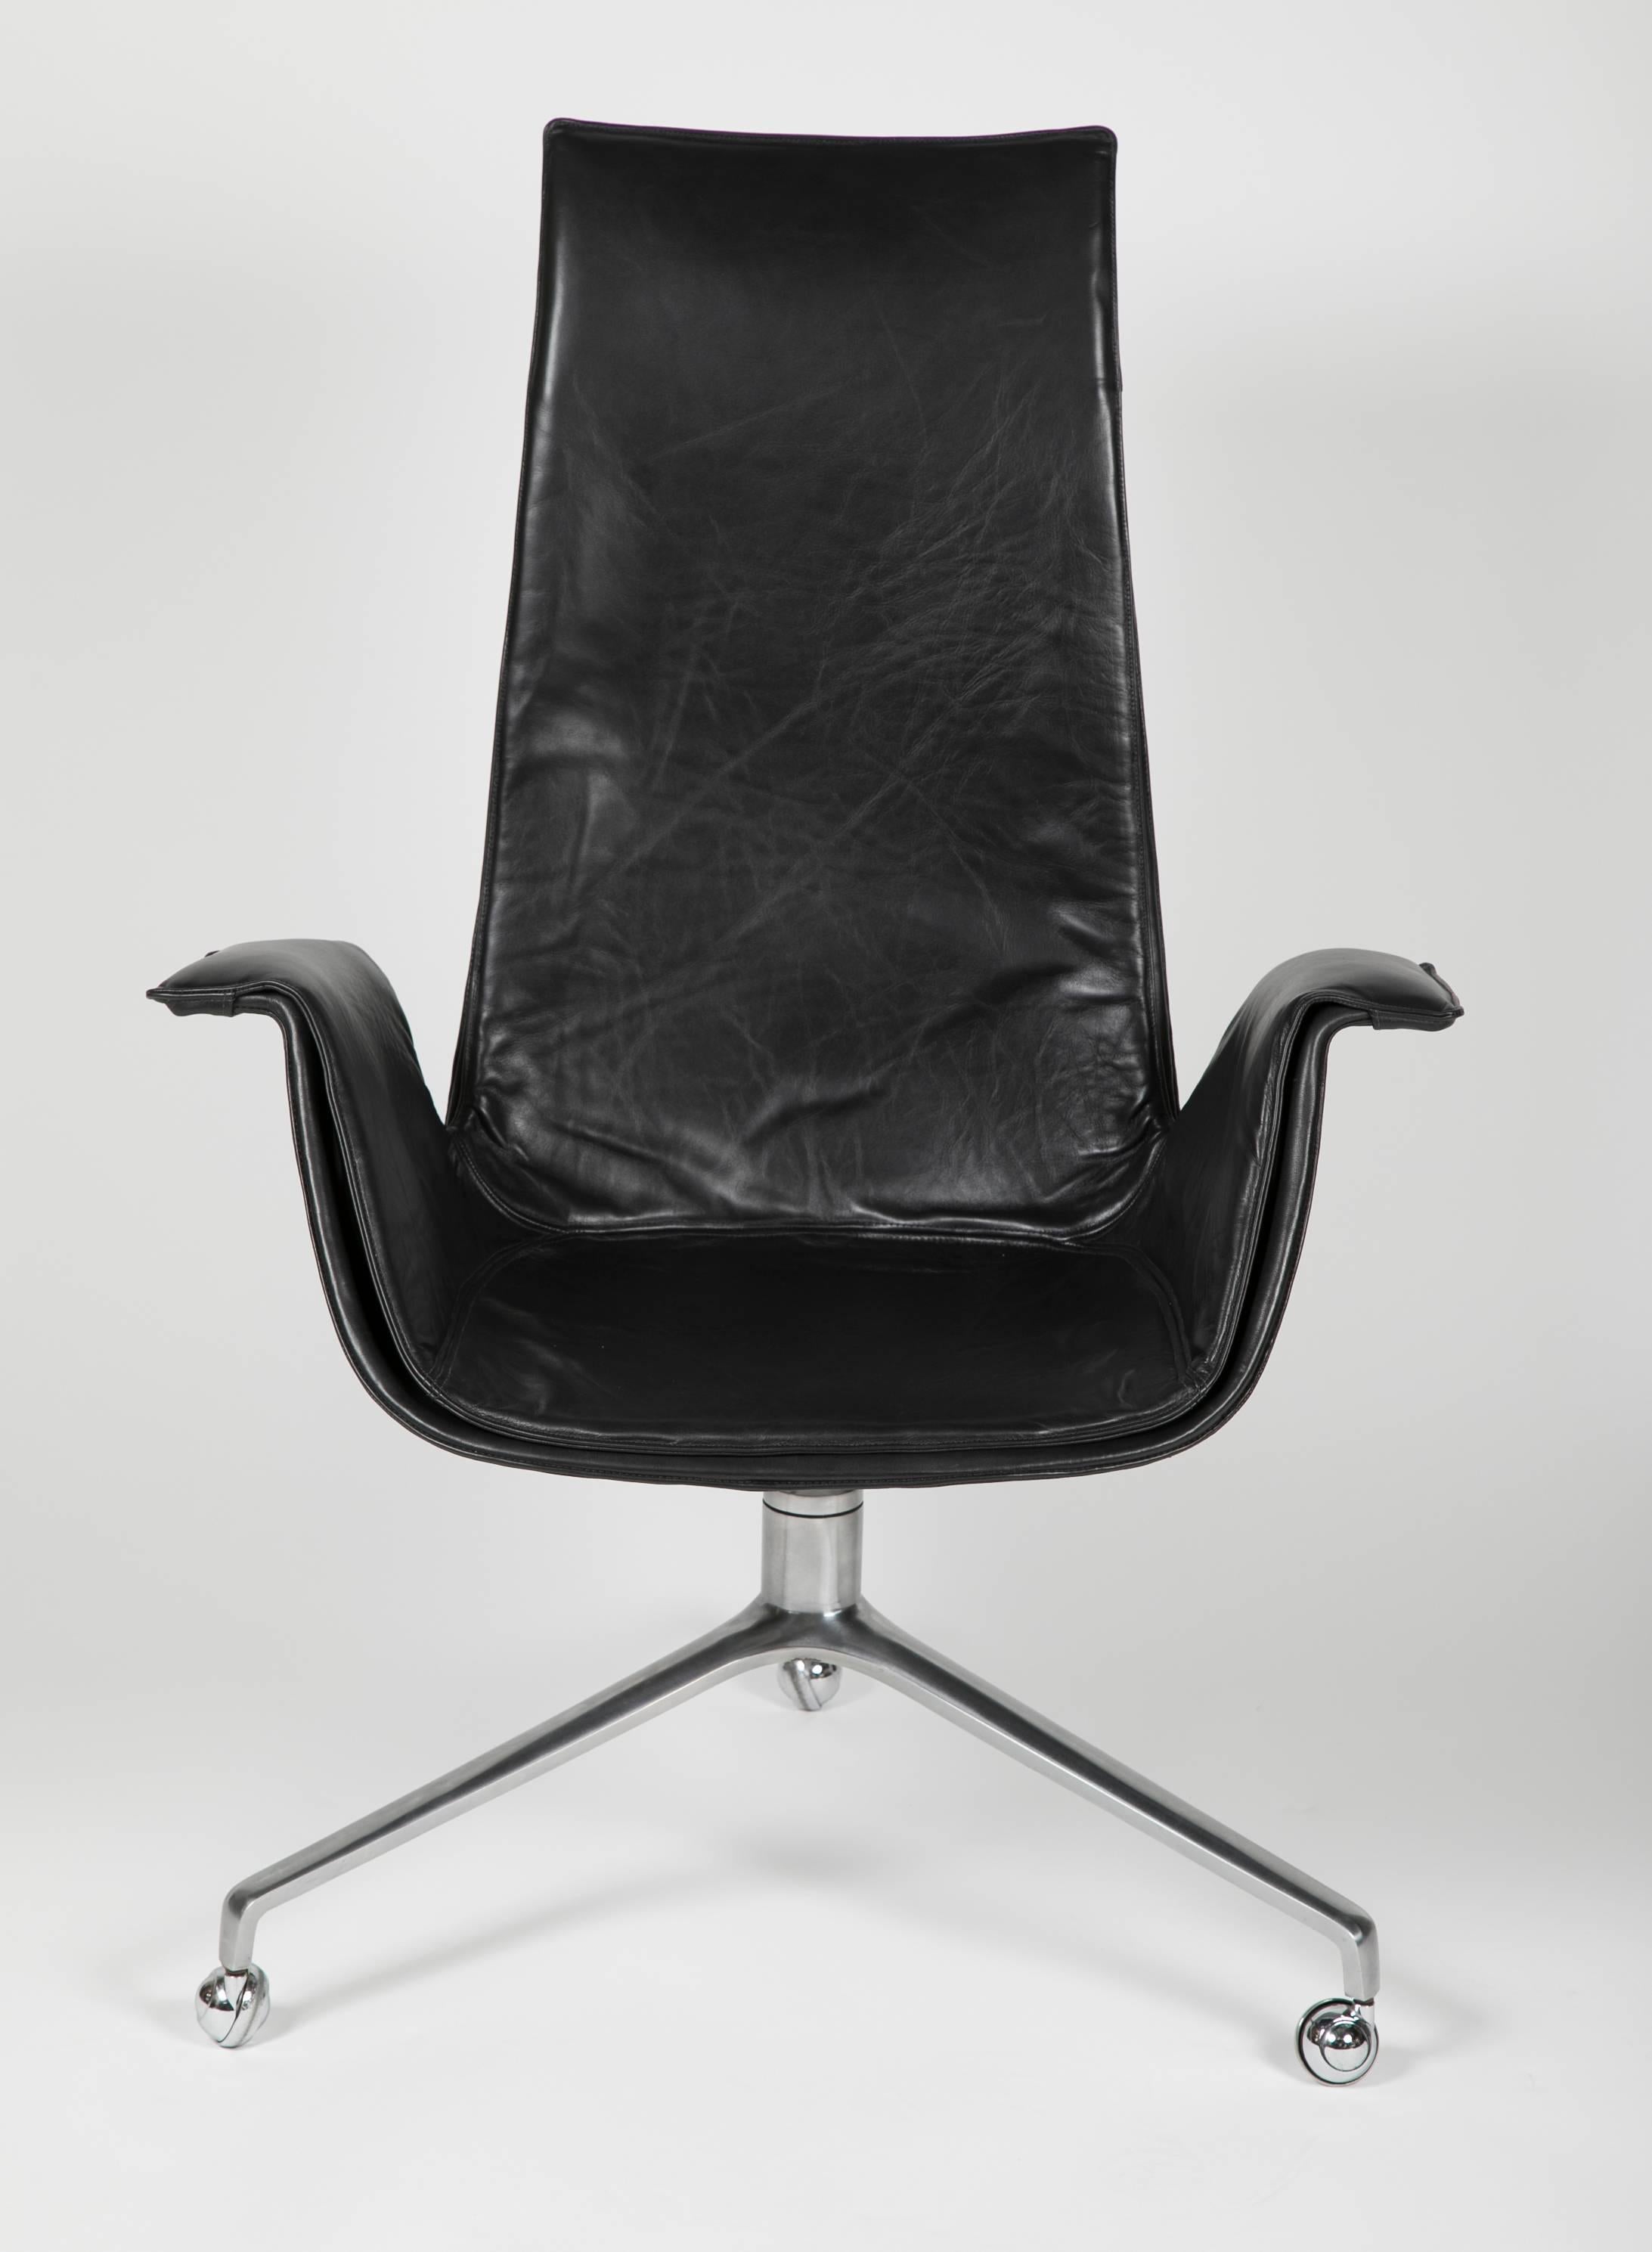 Chaise Bird de Jorgen Kastholm et Preben Fabricius pour Alfred Kill. Ce modèle de chaise de bureau est équipé de roulettes, plus rares. Nouvellement recouvert de cuir Sorensen noir.